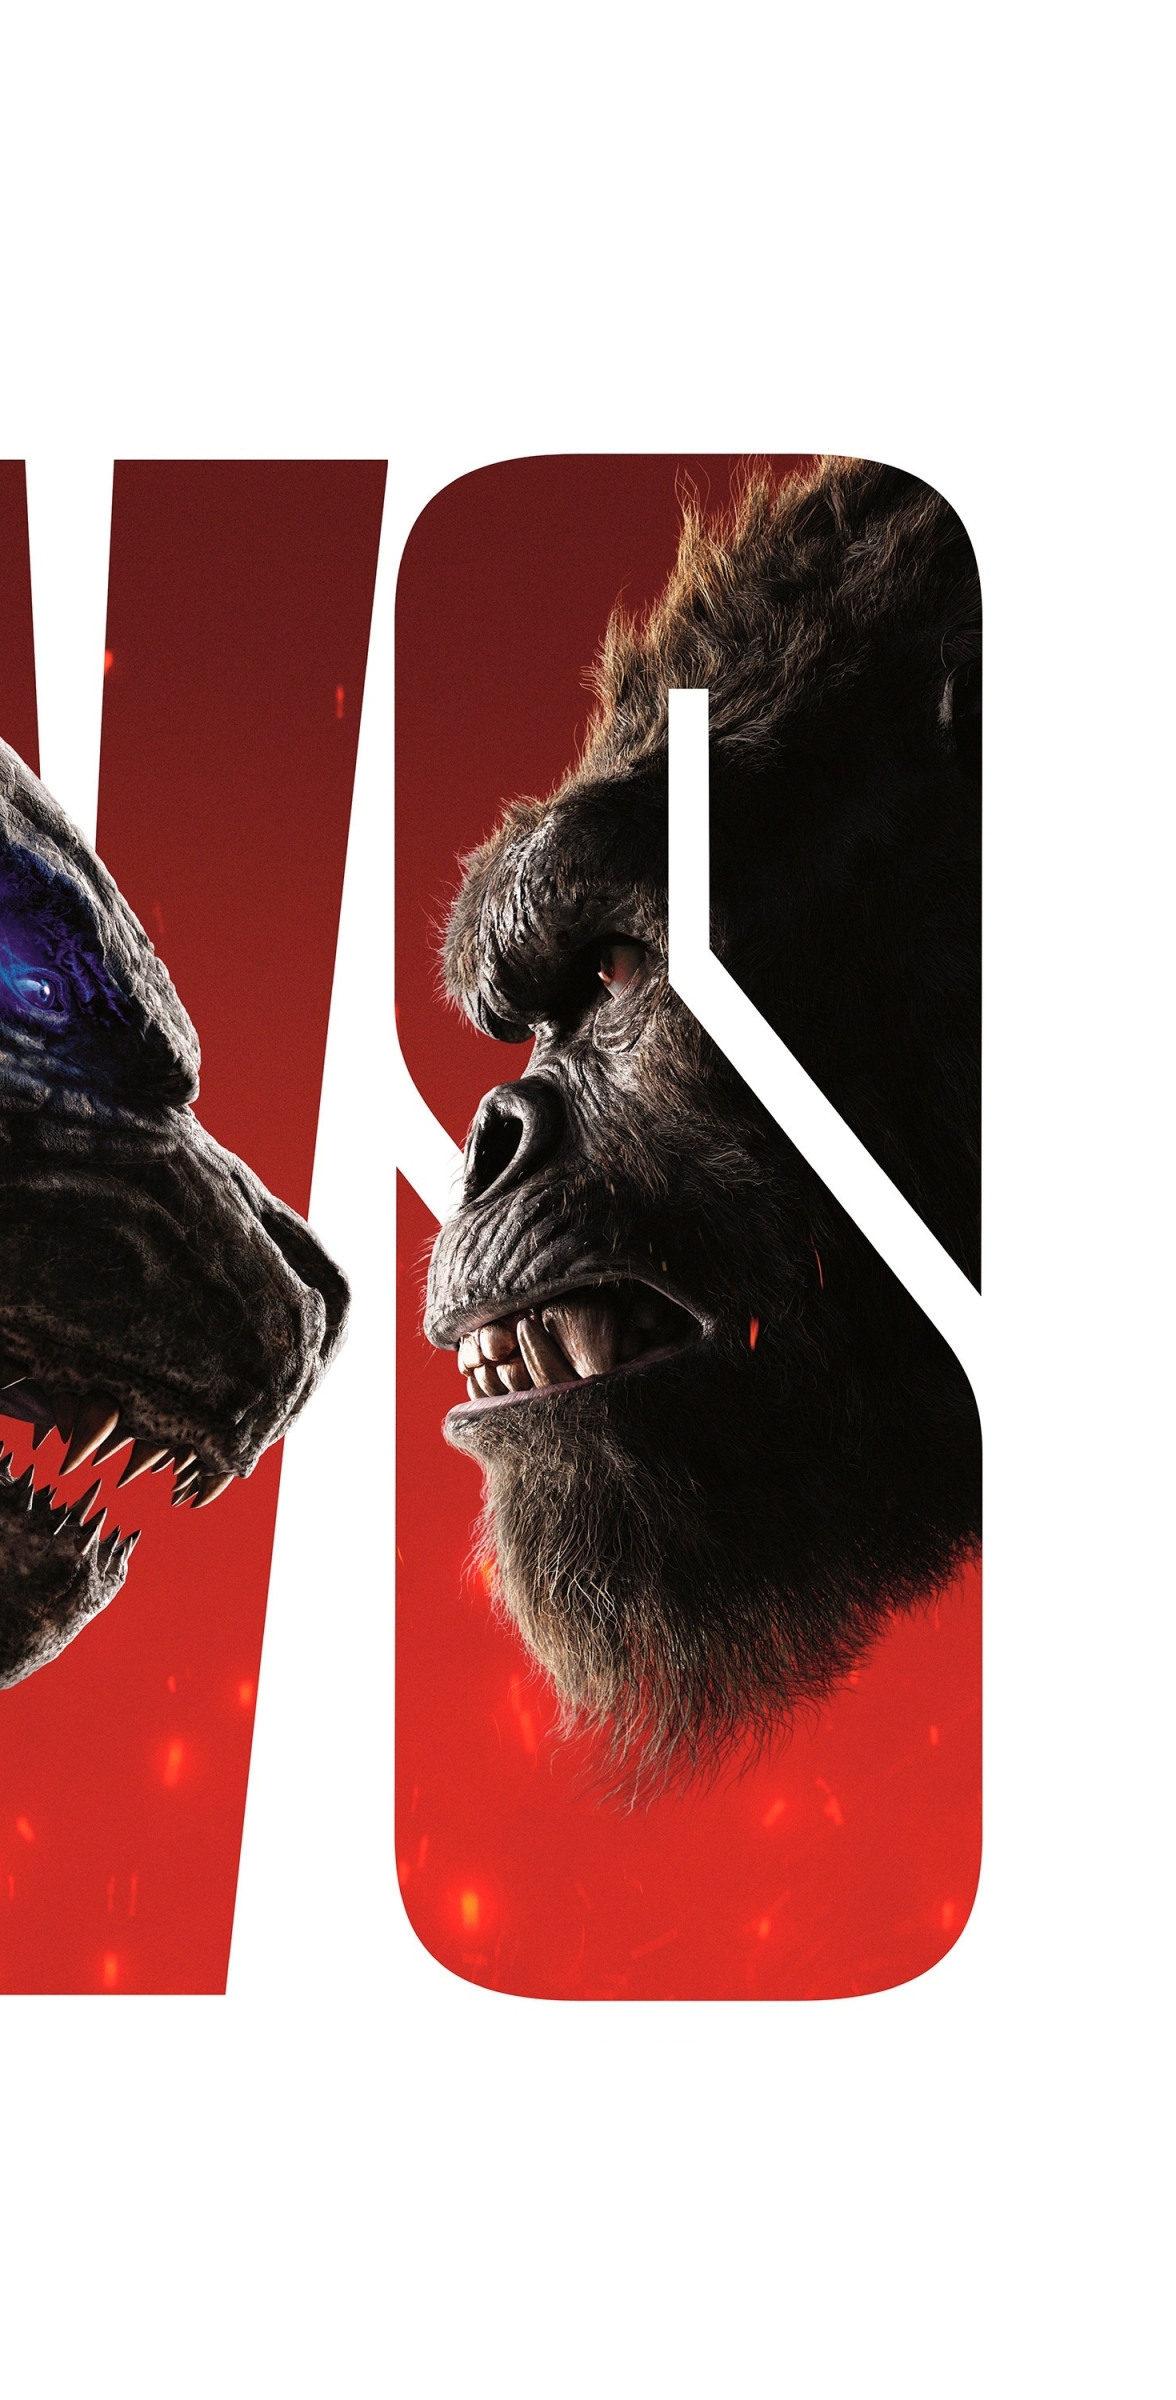 1176x2400 Kong vs Godzilla Poster 1176x2400 Resolution Wallpaper, HD